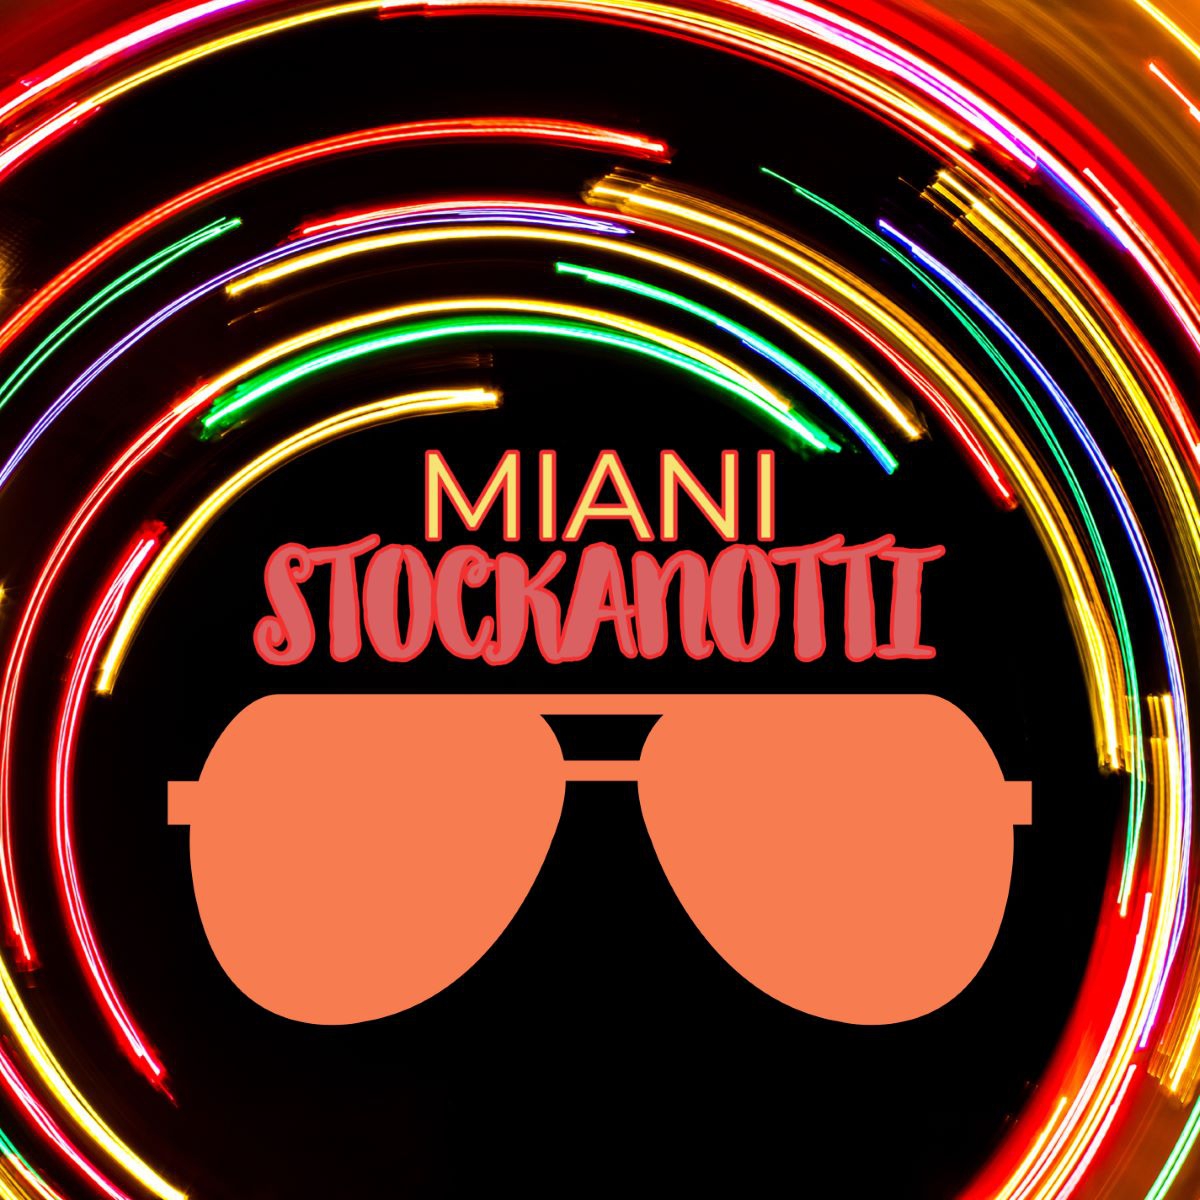 Miani - “Stockanotti”